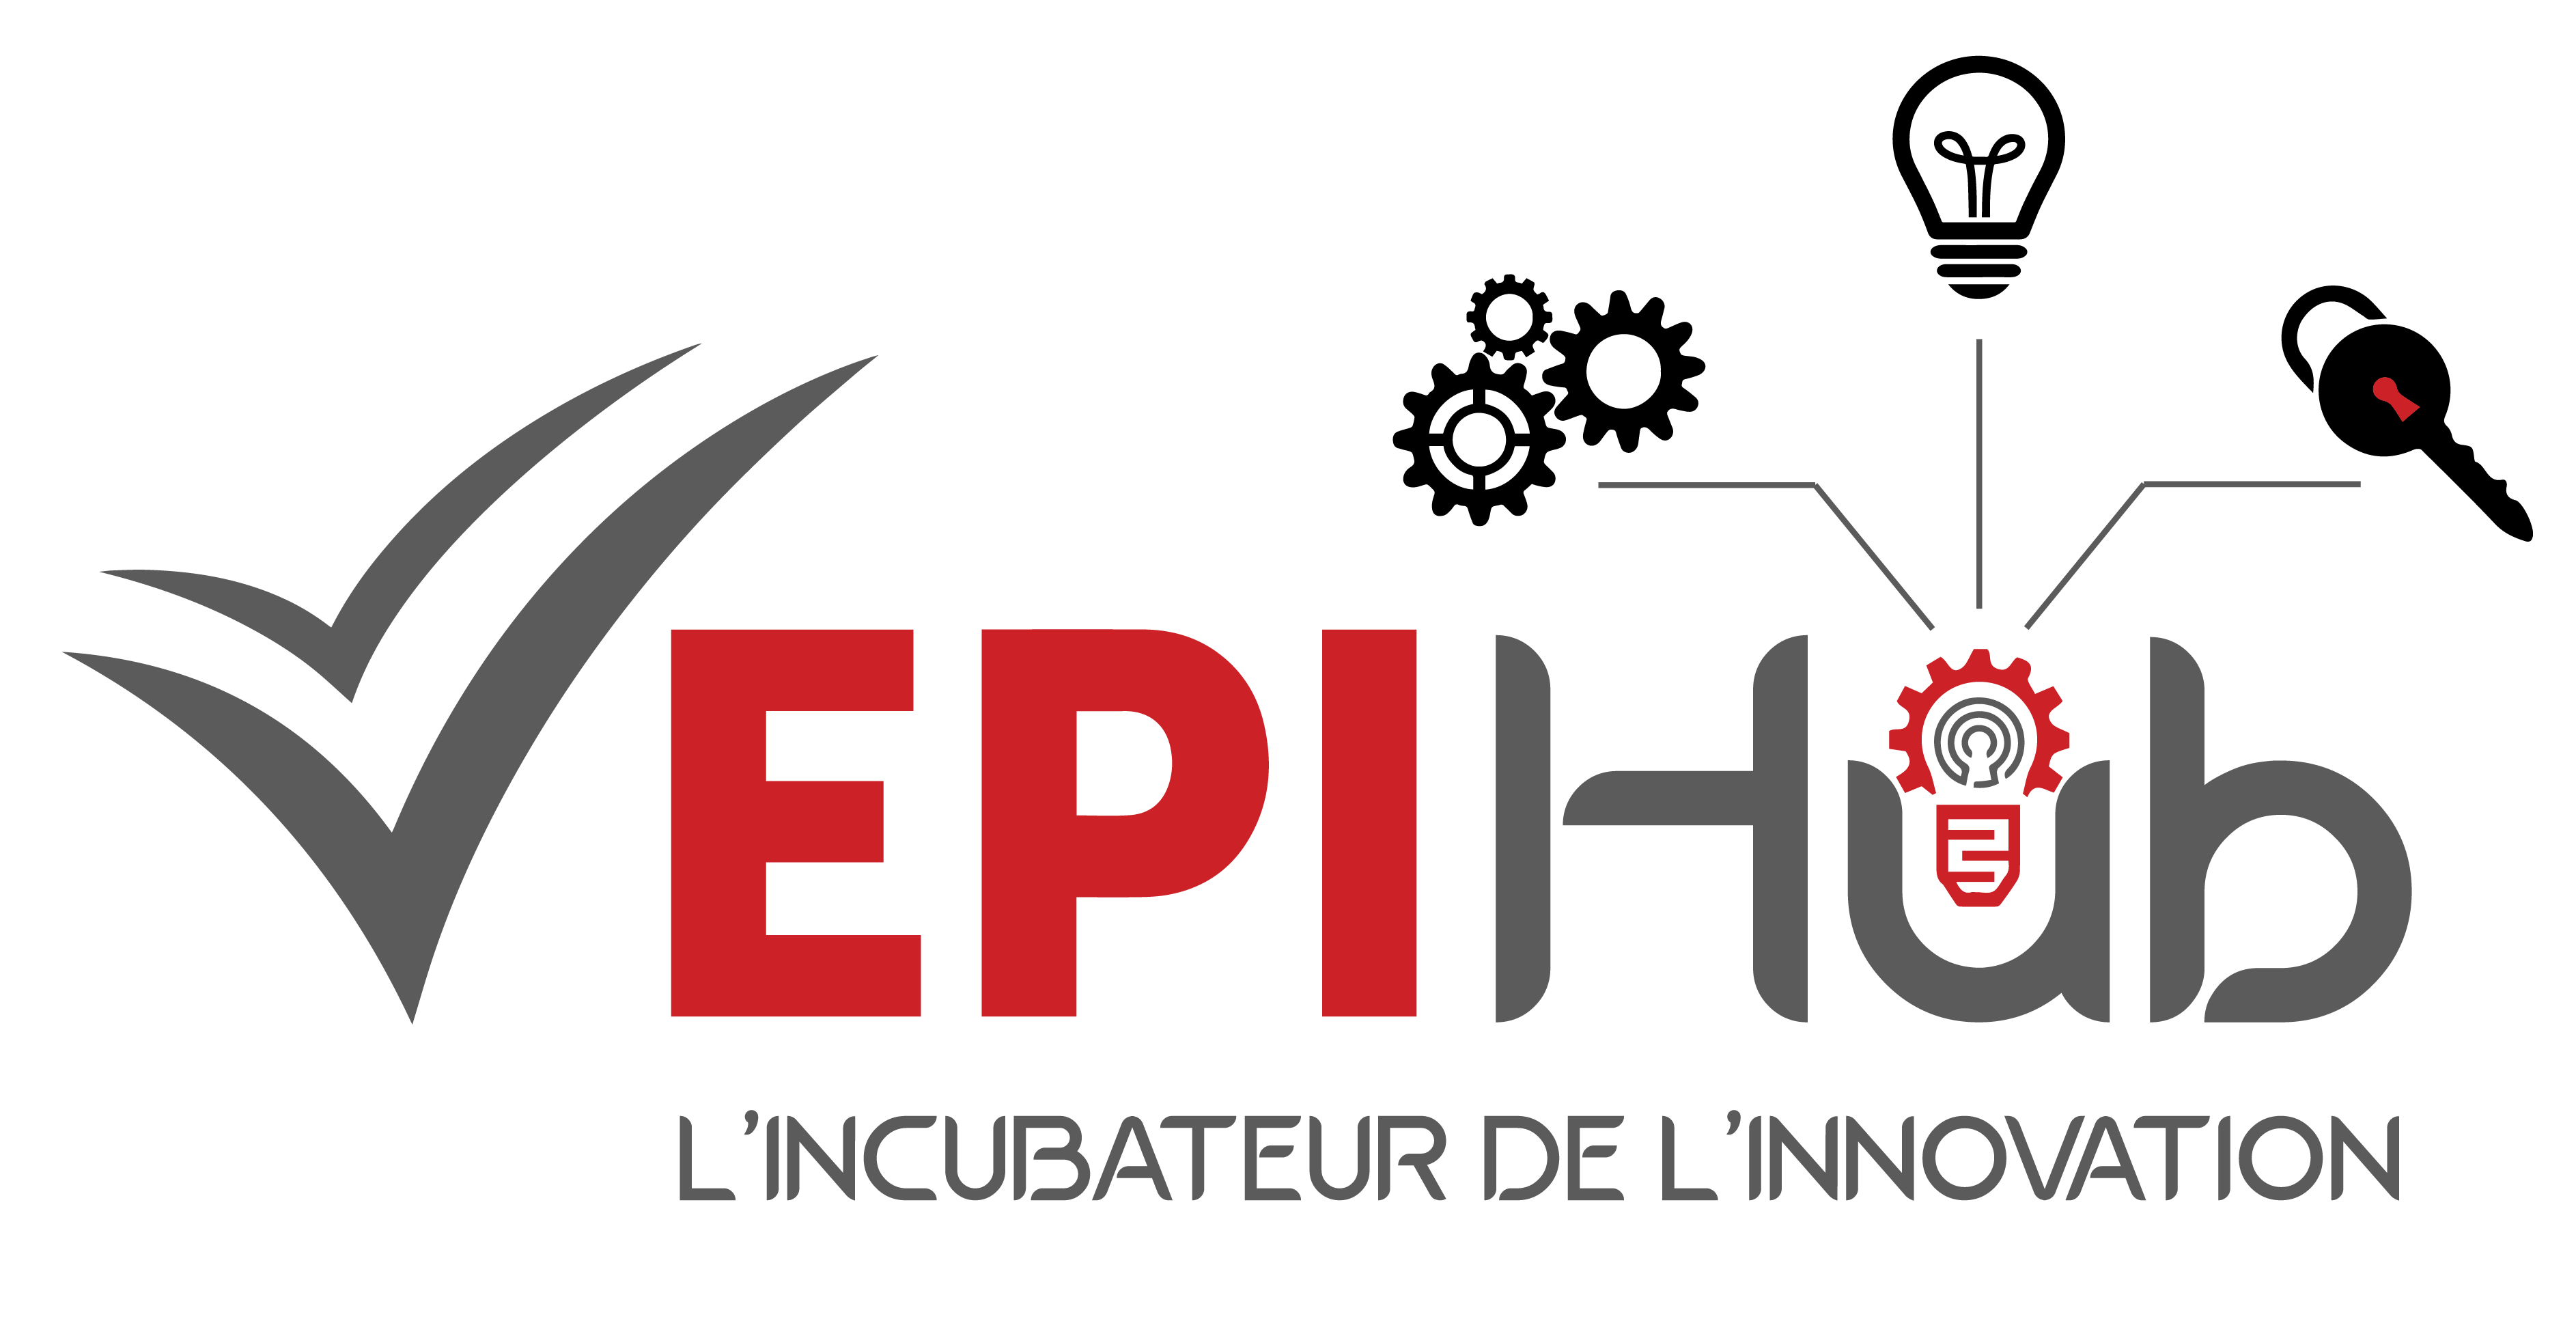 EPI Hub